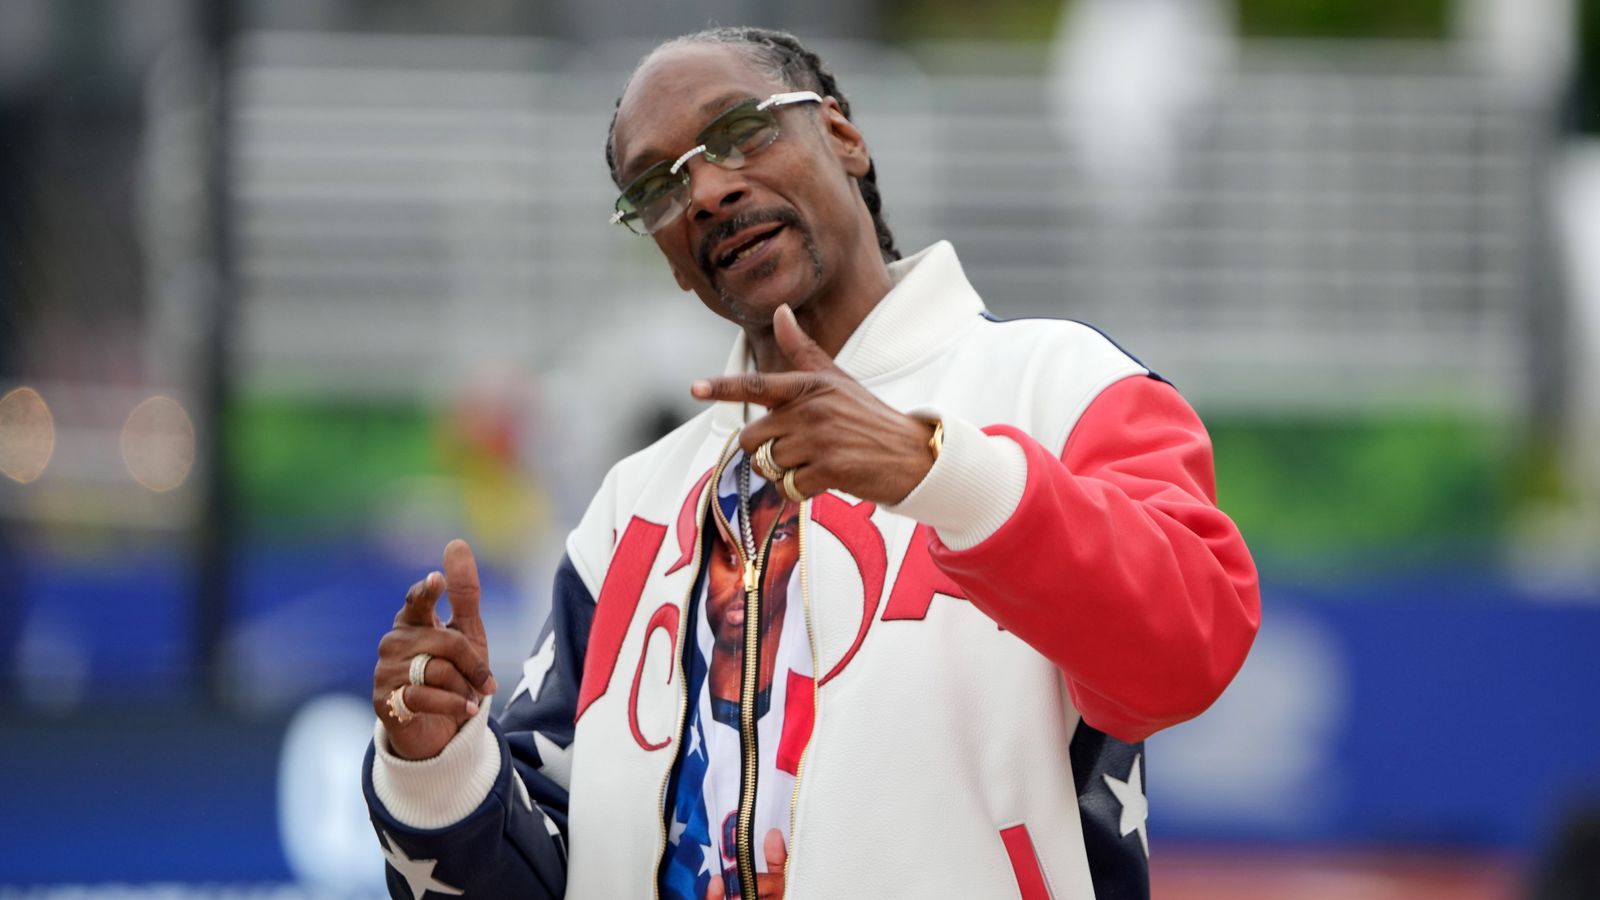 Snoop Dogg 将在巴黎进行最后阶段的奥运火炬传递 | 世界新闻